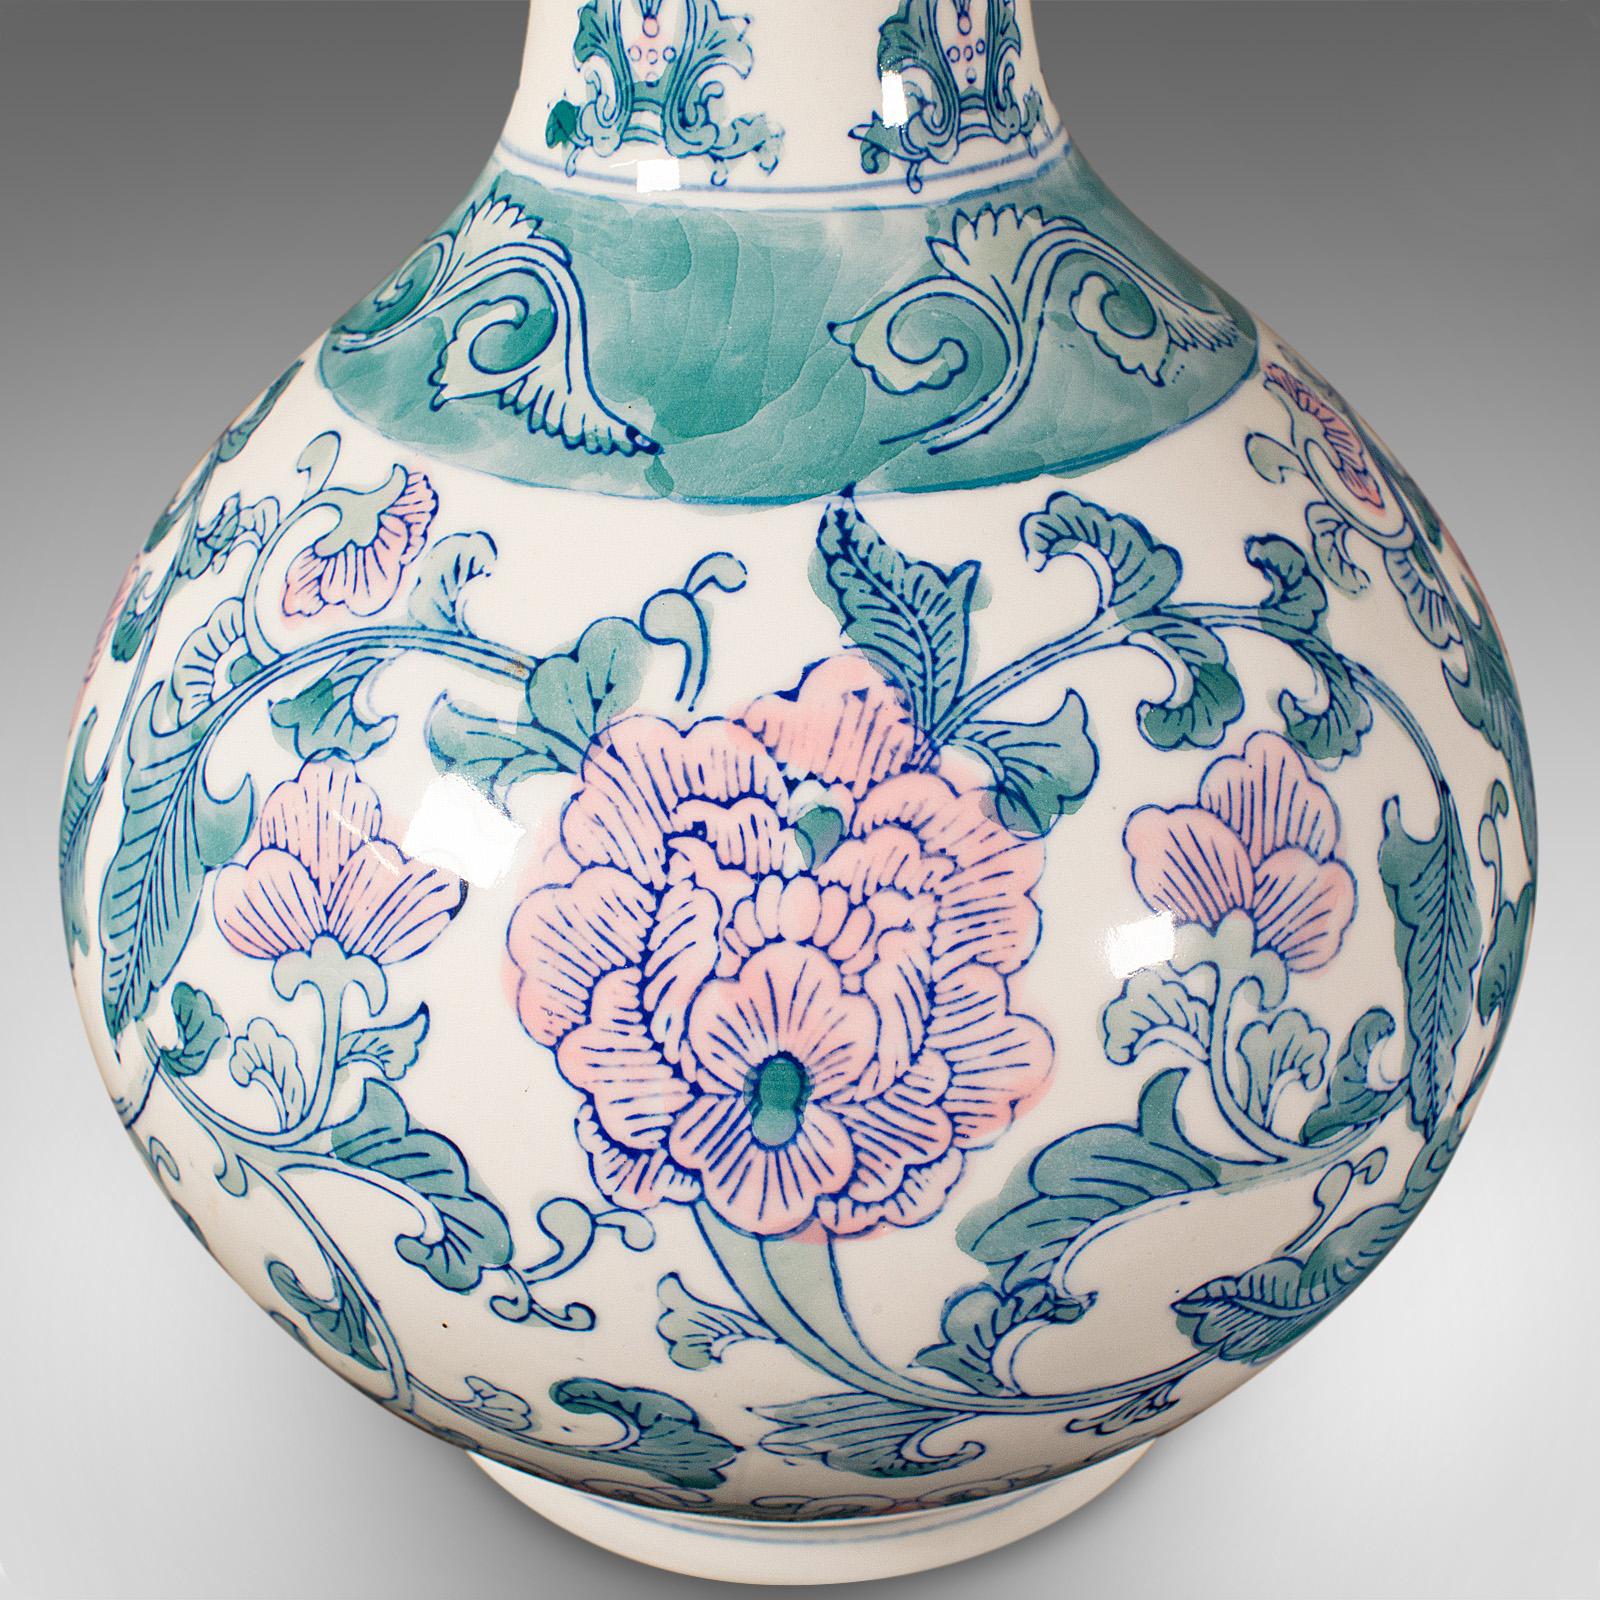 Large Vintage Baluster Vase, Chinese, Ceramic Flower Pot, Art Deco Revival, 1970 For Sale 6